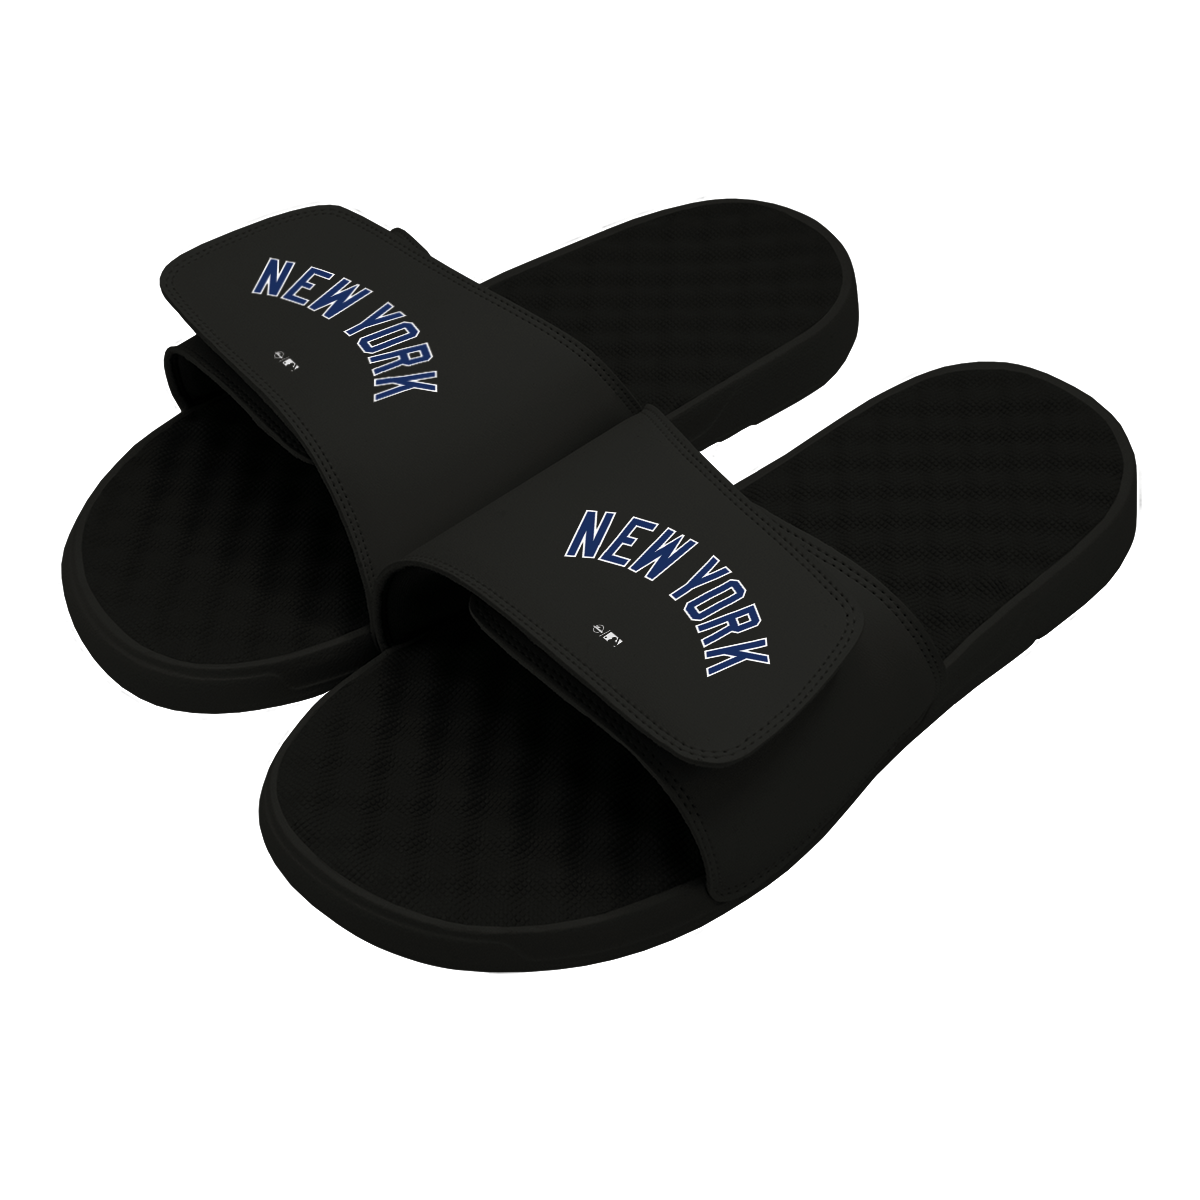 ISlides Official - ISlides USA- New York Yankees MLB Custom Slides Slides 4 / Black Slides - Sandals - Slippers